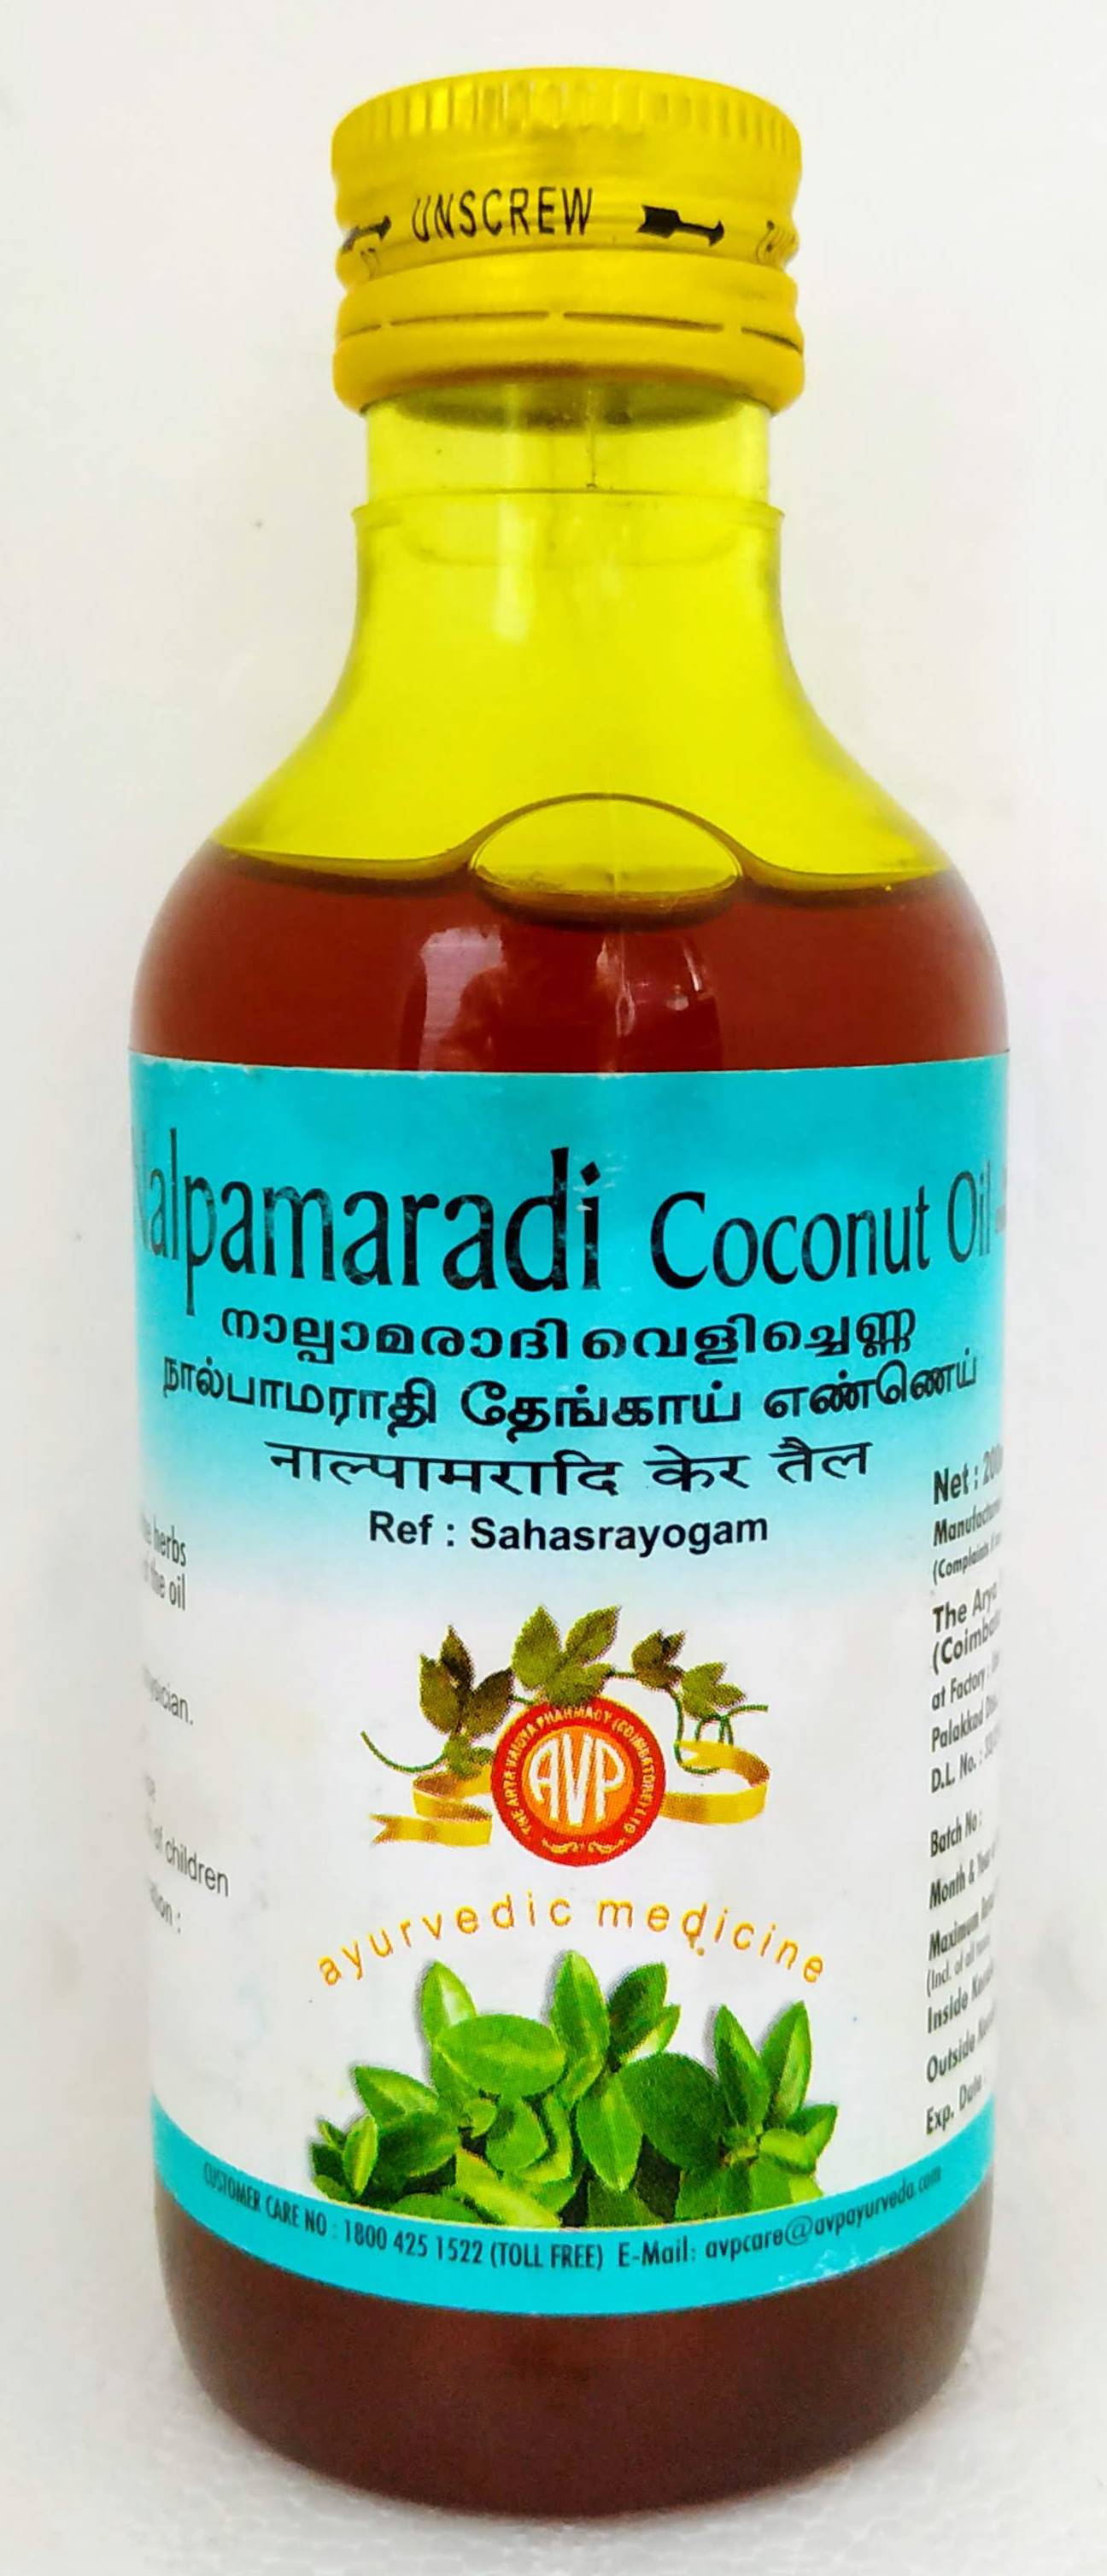 Nalpamaradi Coconut Oil 200ml -  AVP - Medizzo.com